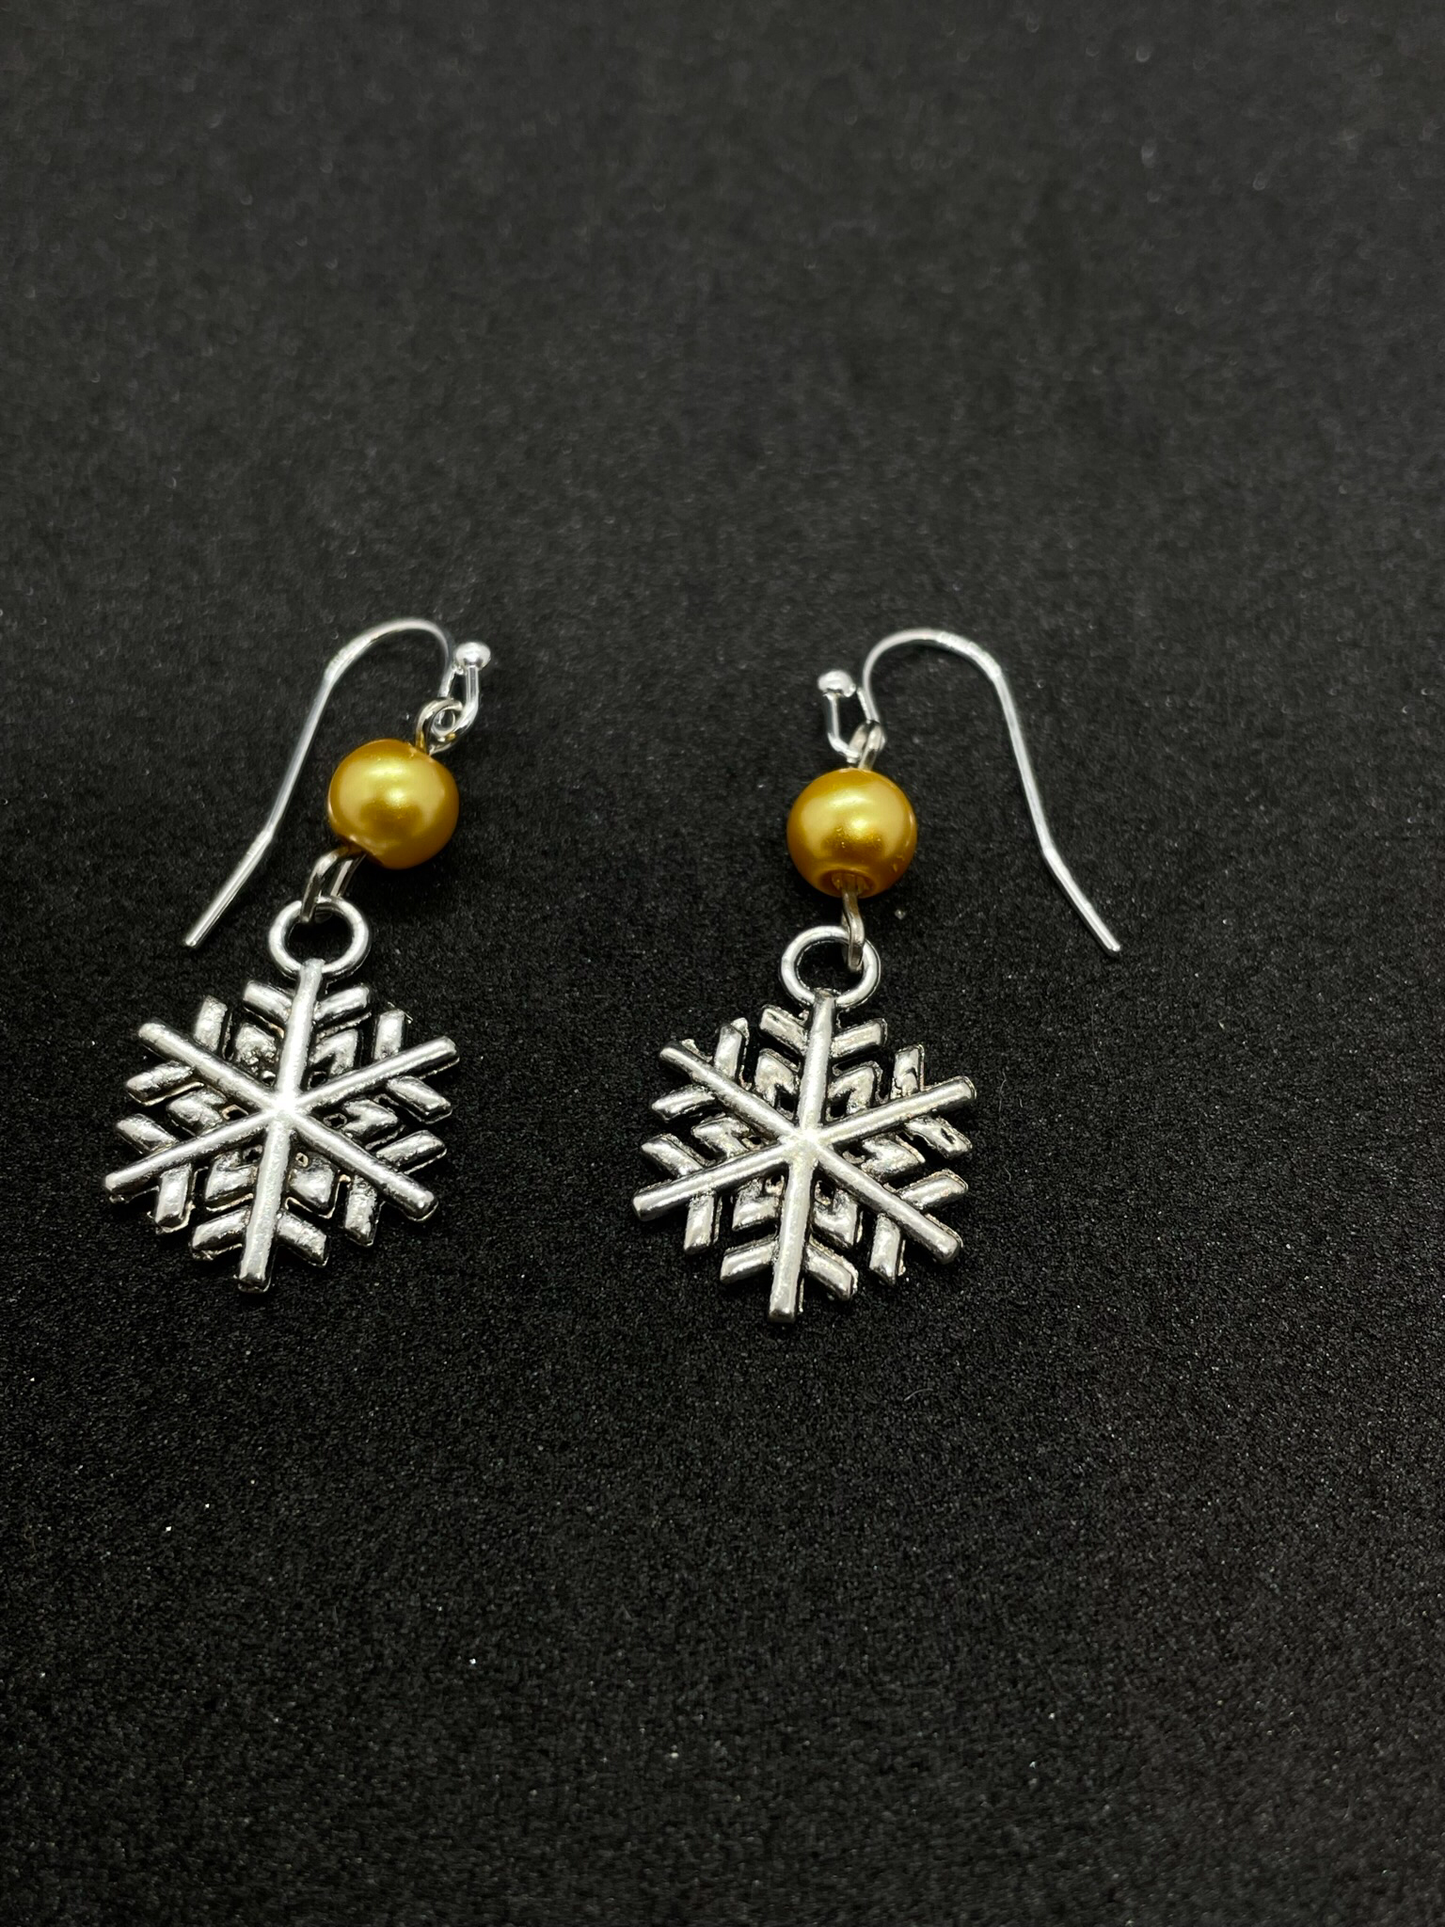 Festive snowflake dangling from bead, drop earrings